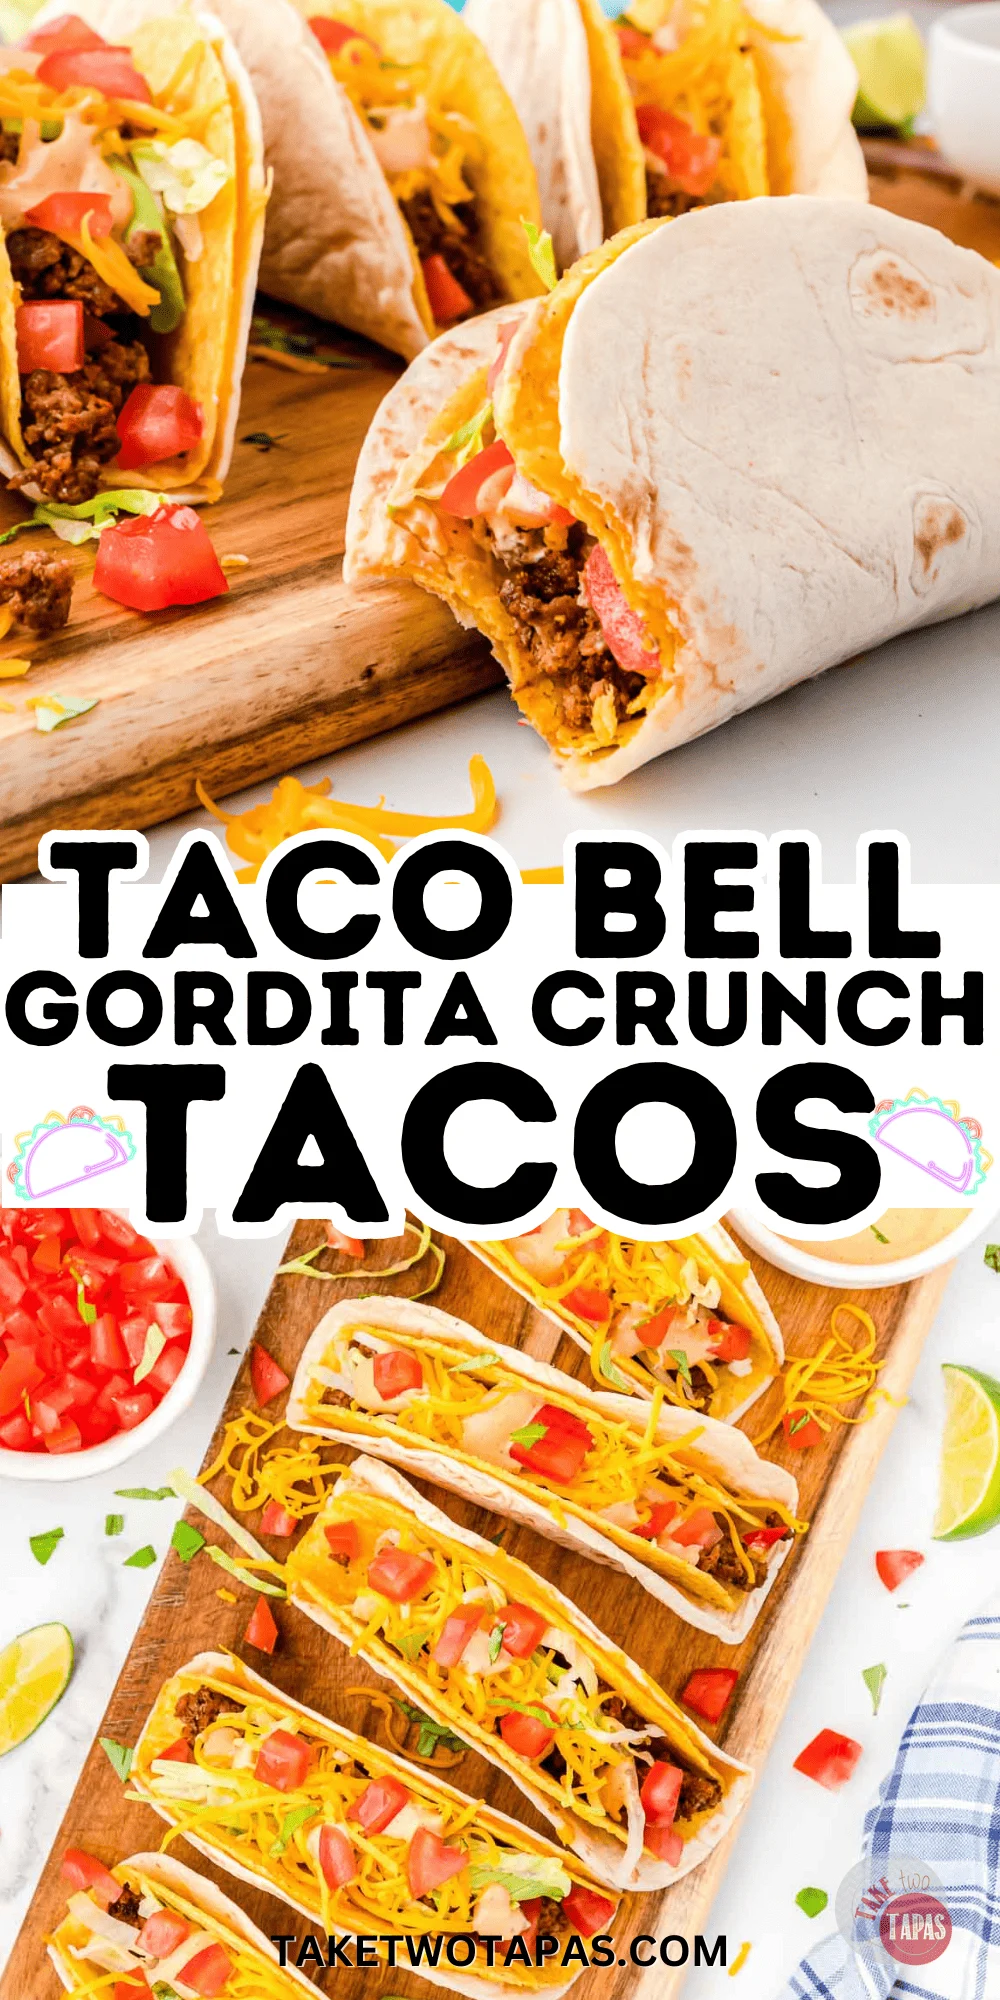 cheesy gordita crunch tacos